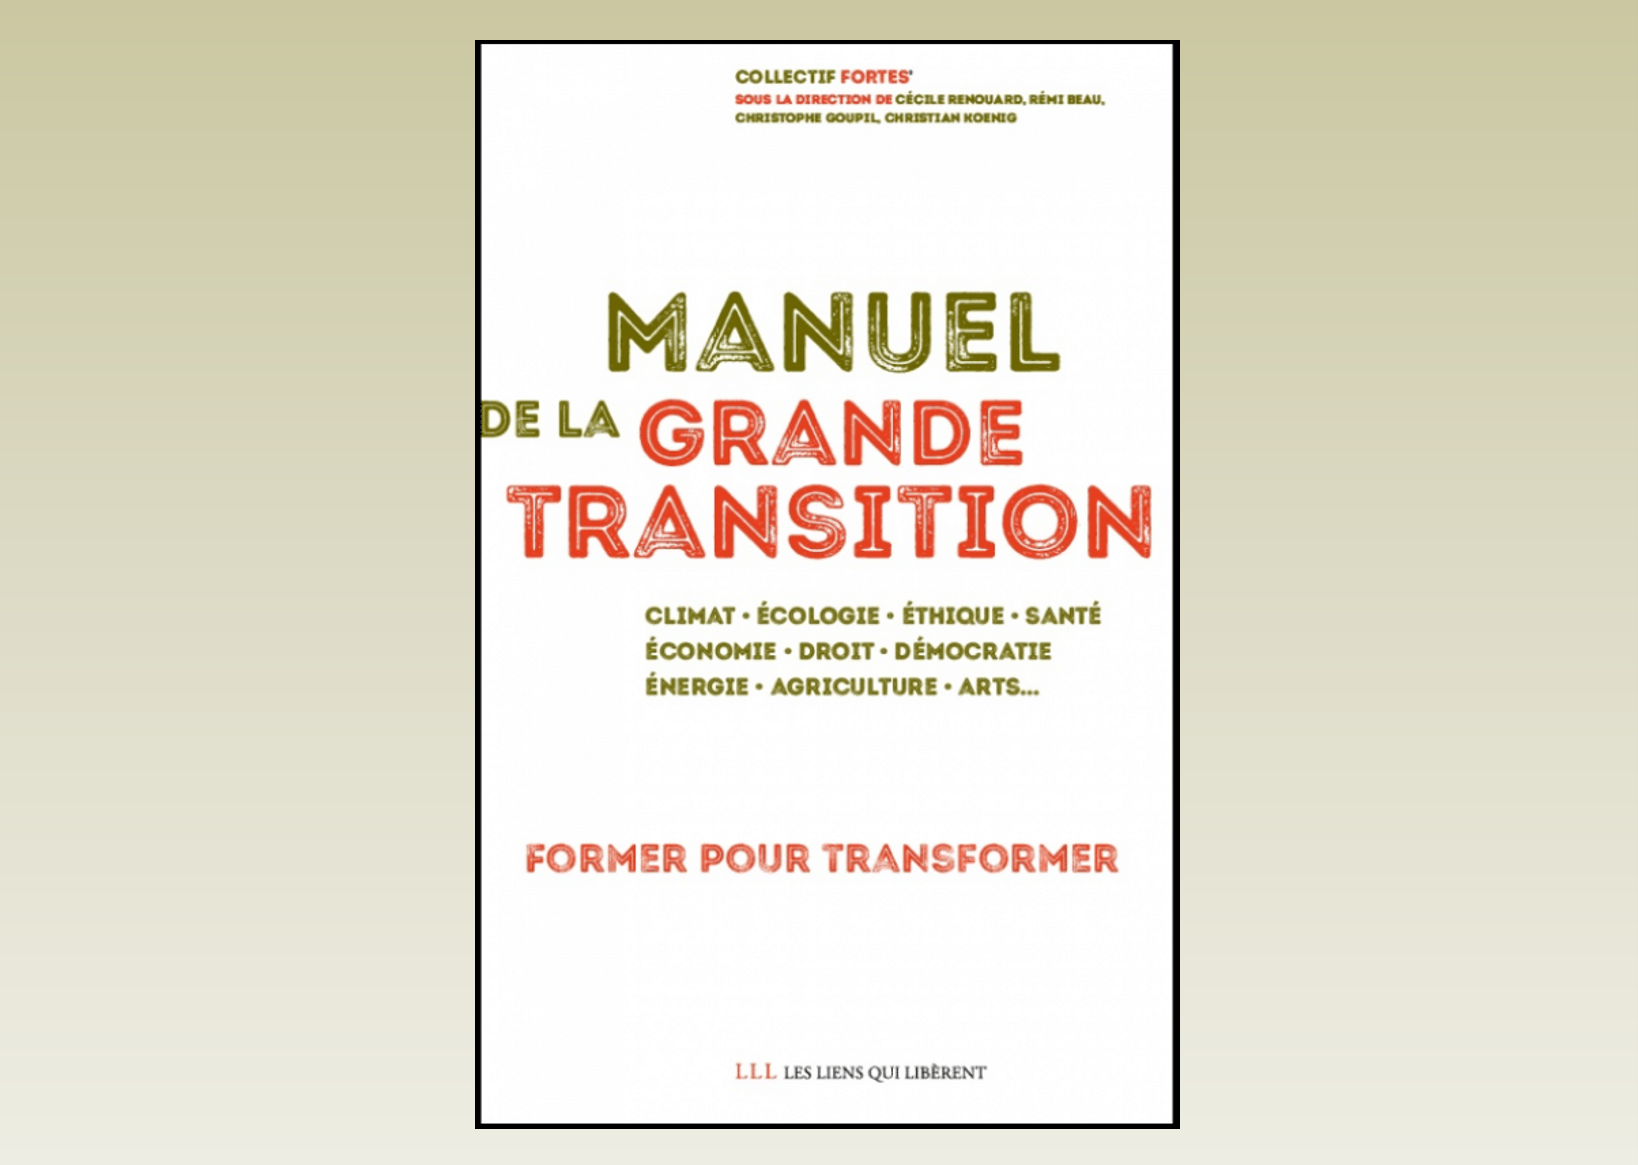 Manuel Grande Transition